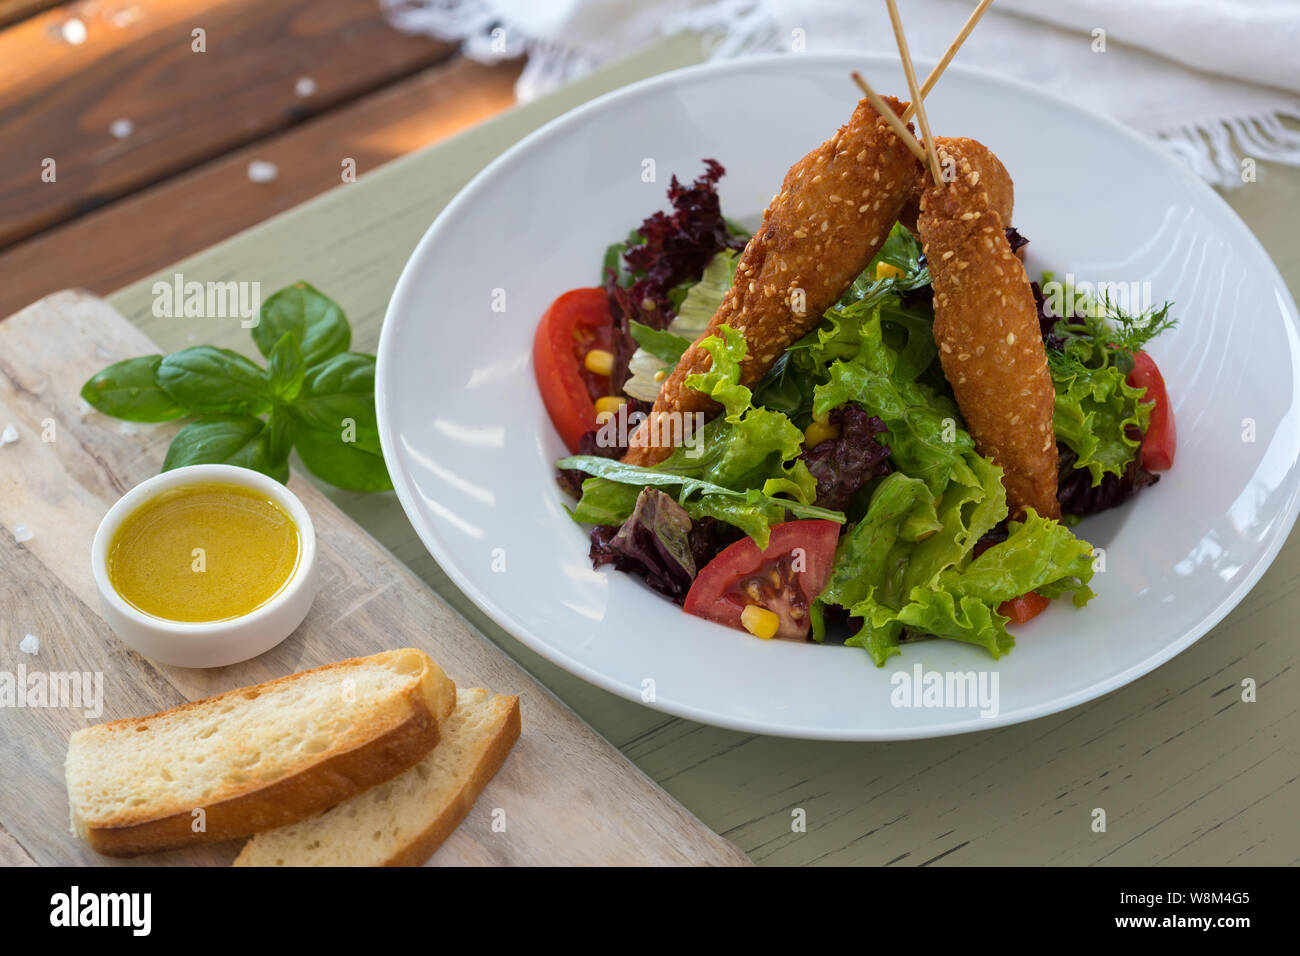 Fried Chicken sur des brochettes en bois avec une salade de légumes et sauce. Pique-nique de printemps,,. Délicieux déjeuner. Sur fond clair Banque D'Images